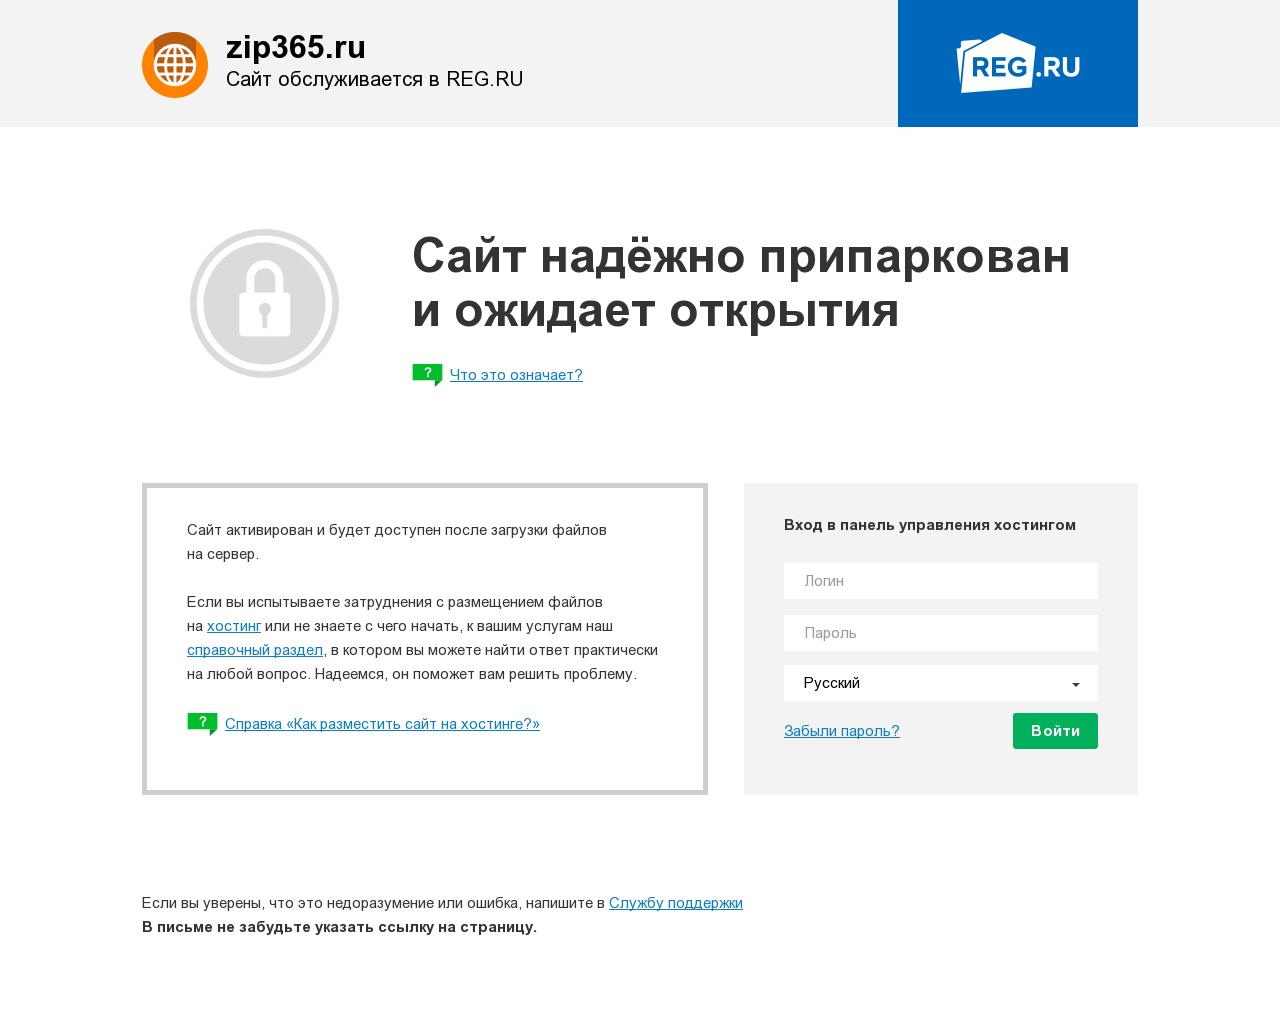 Изображение сайта zip365.ru в разрешении 1280x1024